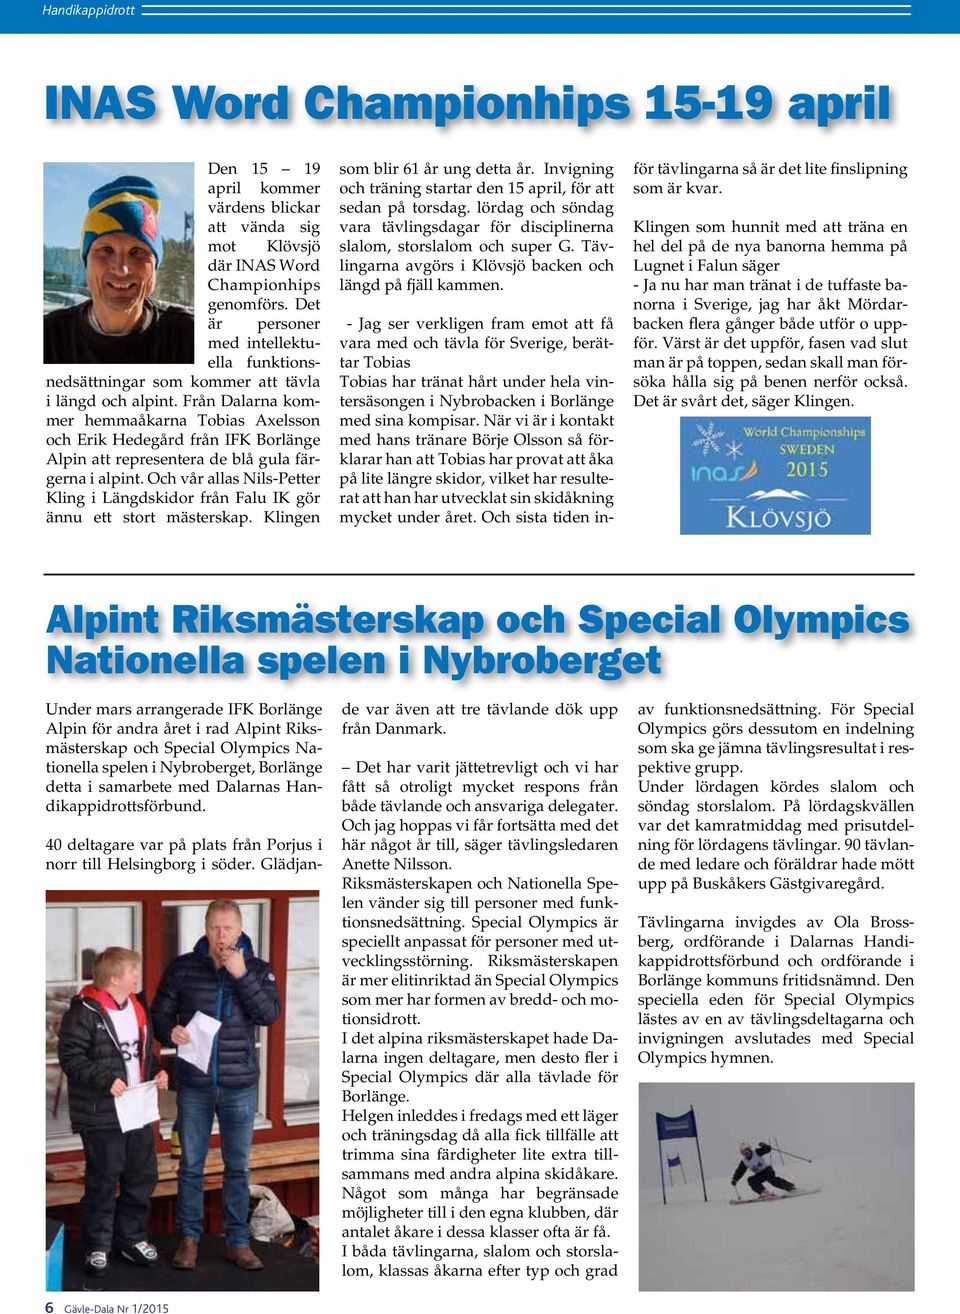 Från Dalarna kommer hemmaåkarna Tobias Axelsson och Erik Hedegård från IFK Borlänge Alpin att representera de blå gula färgerna i alpint.